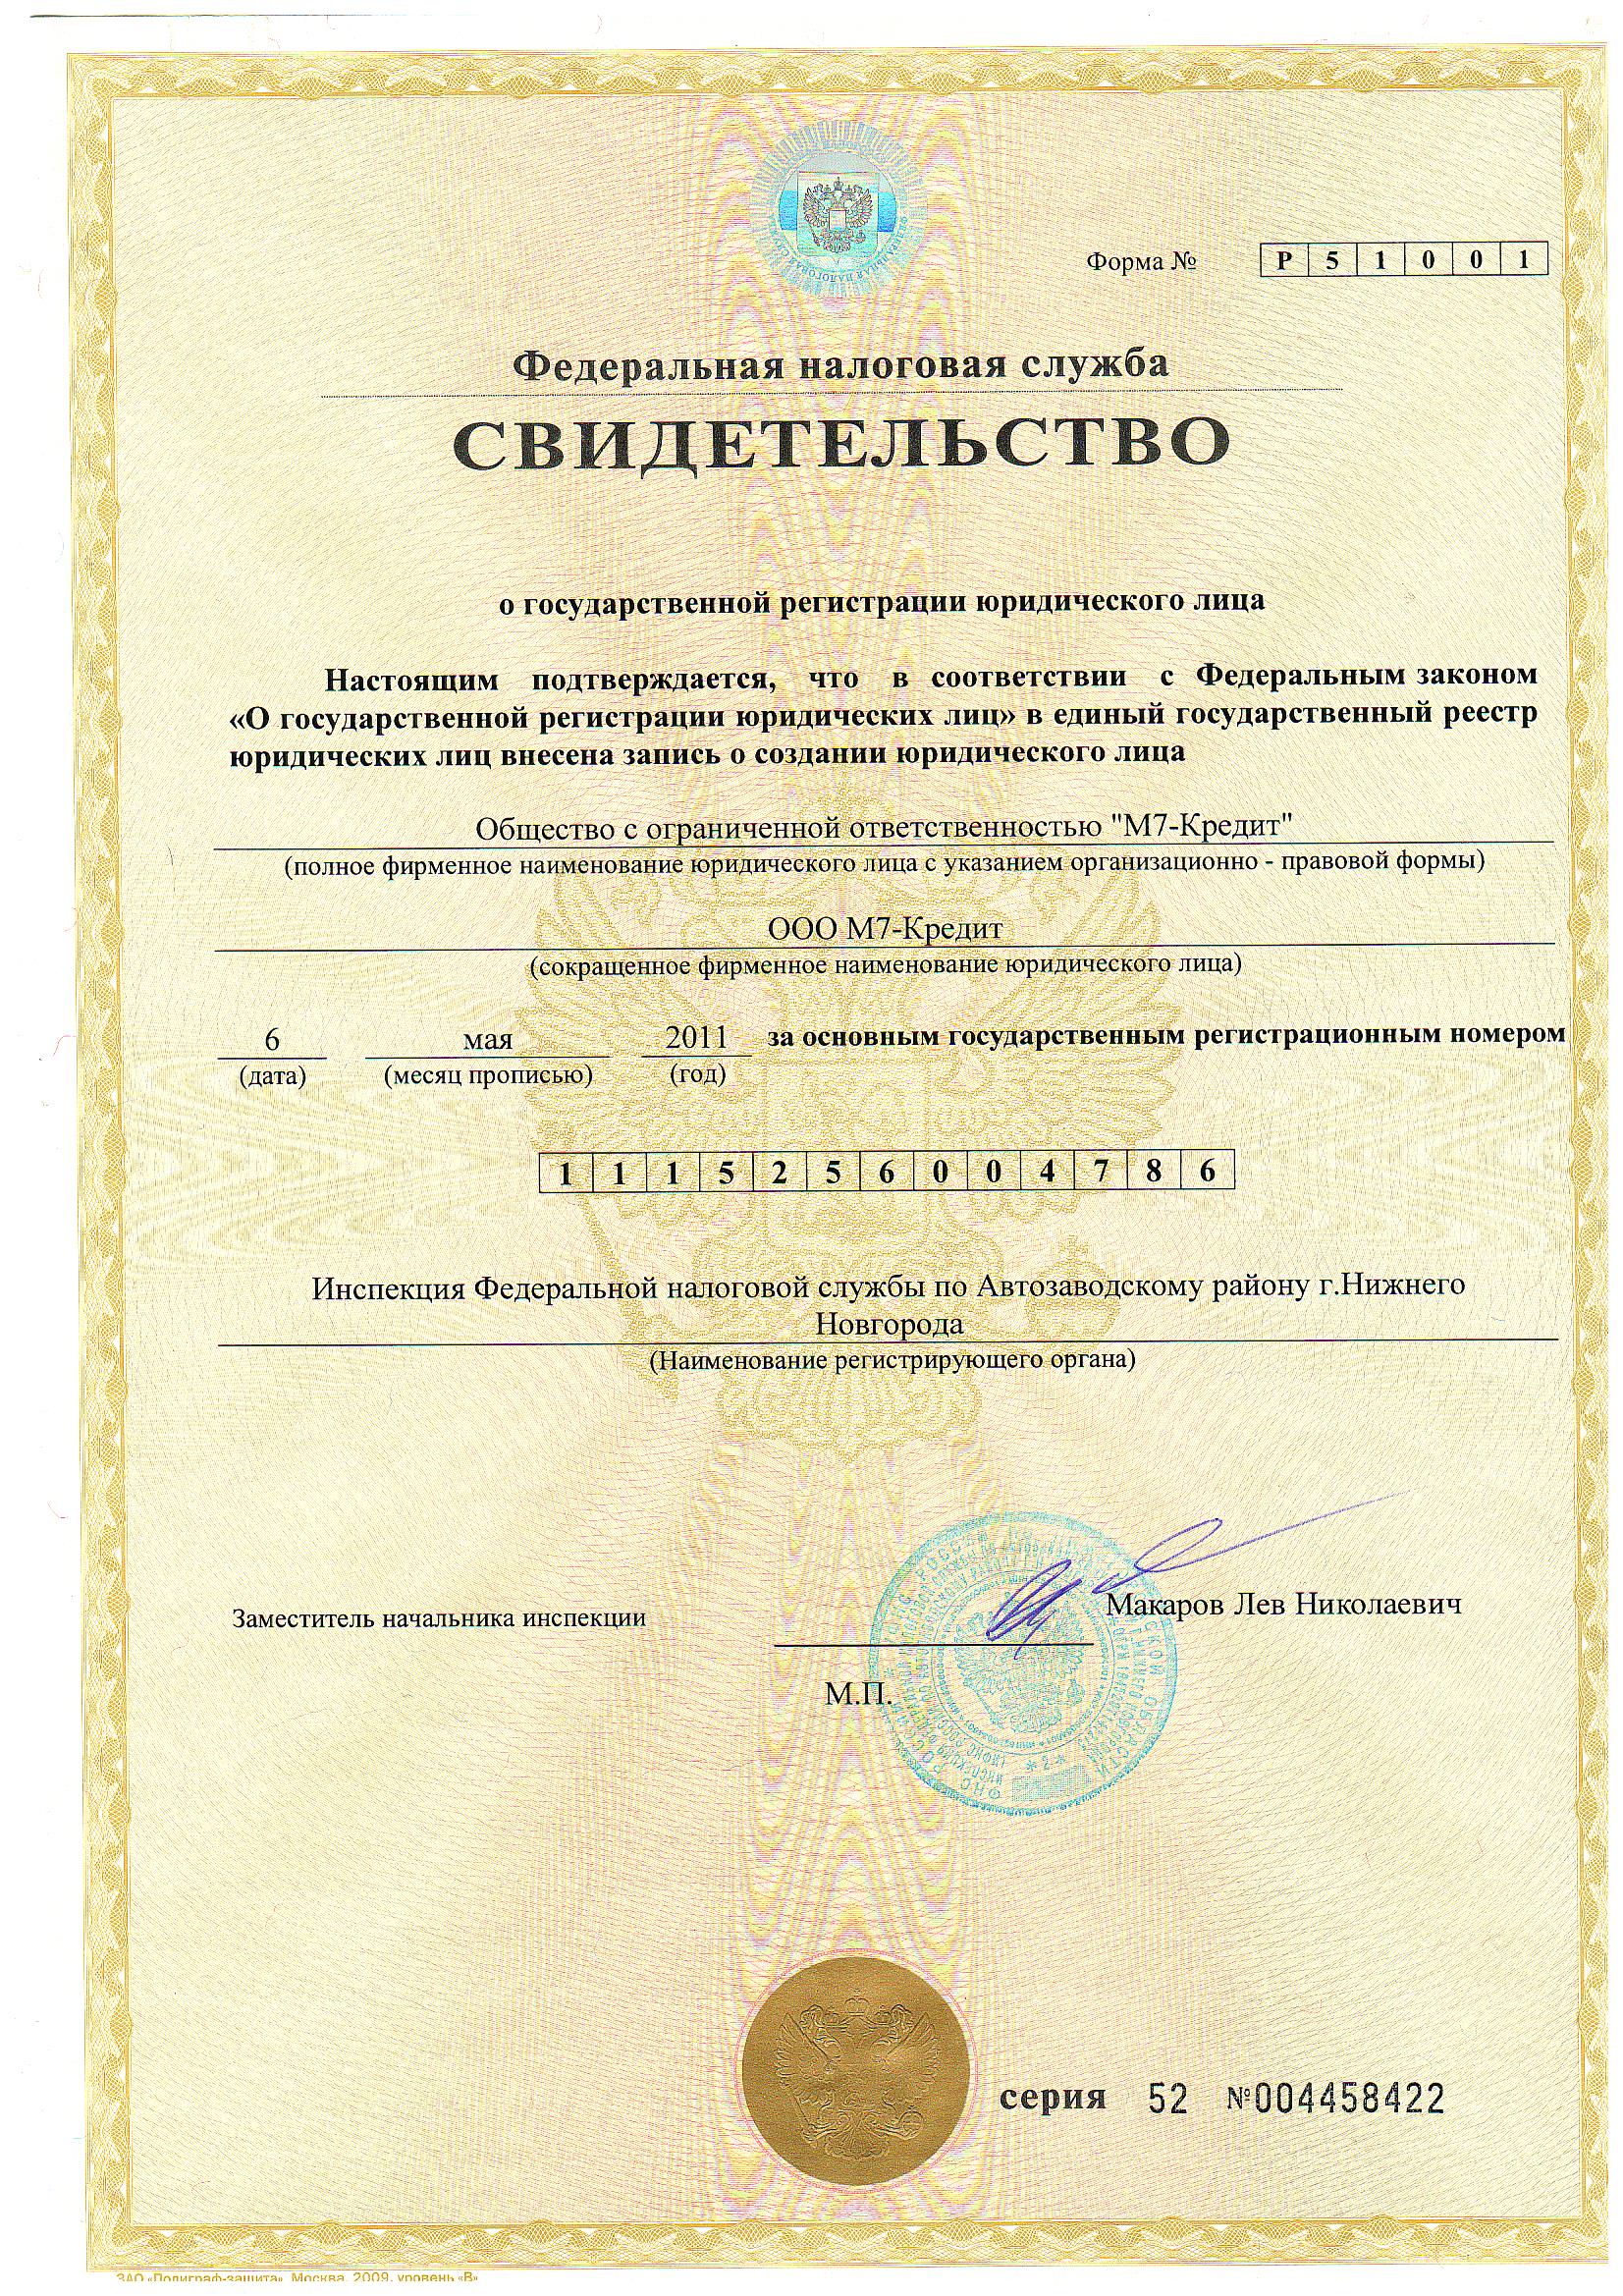 Свидетельство о государственной регистрации юридического лица ООО М7-Кредит